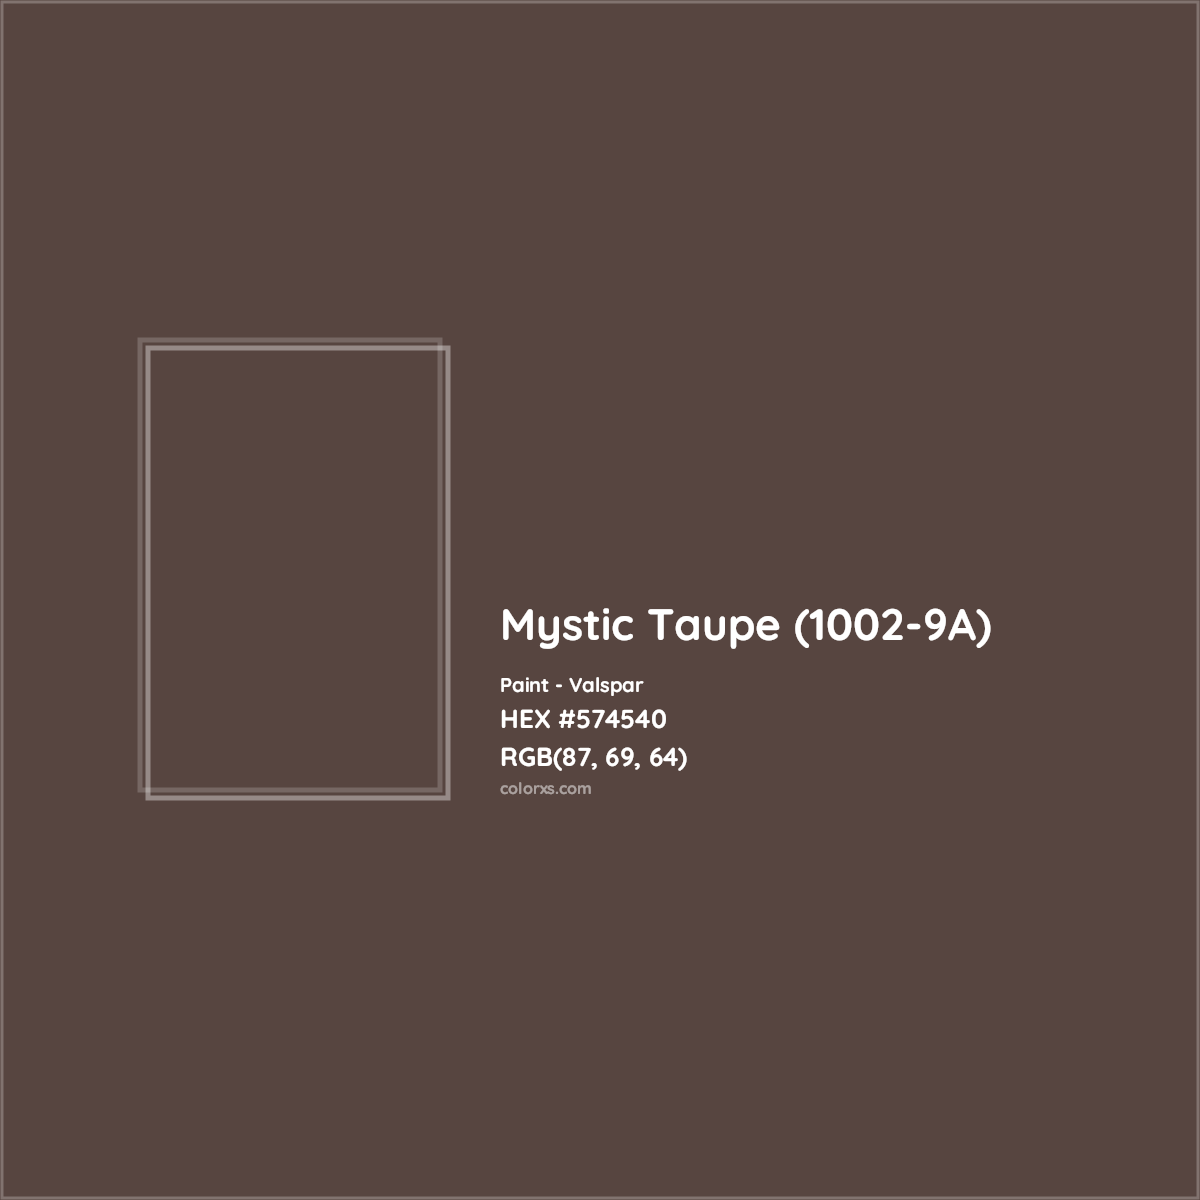 HEX #574540 Mystic Taupe (1002-9A) Paint Valspar - Color Code